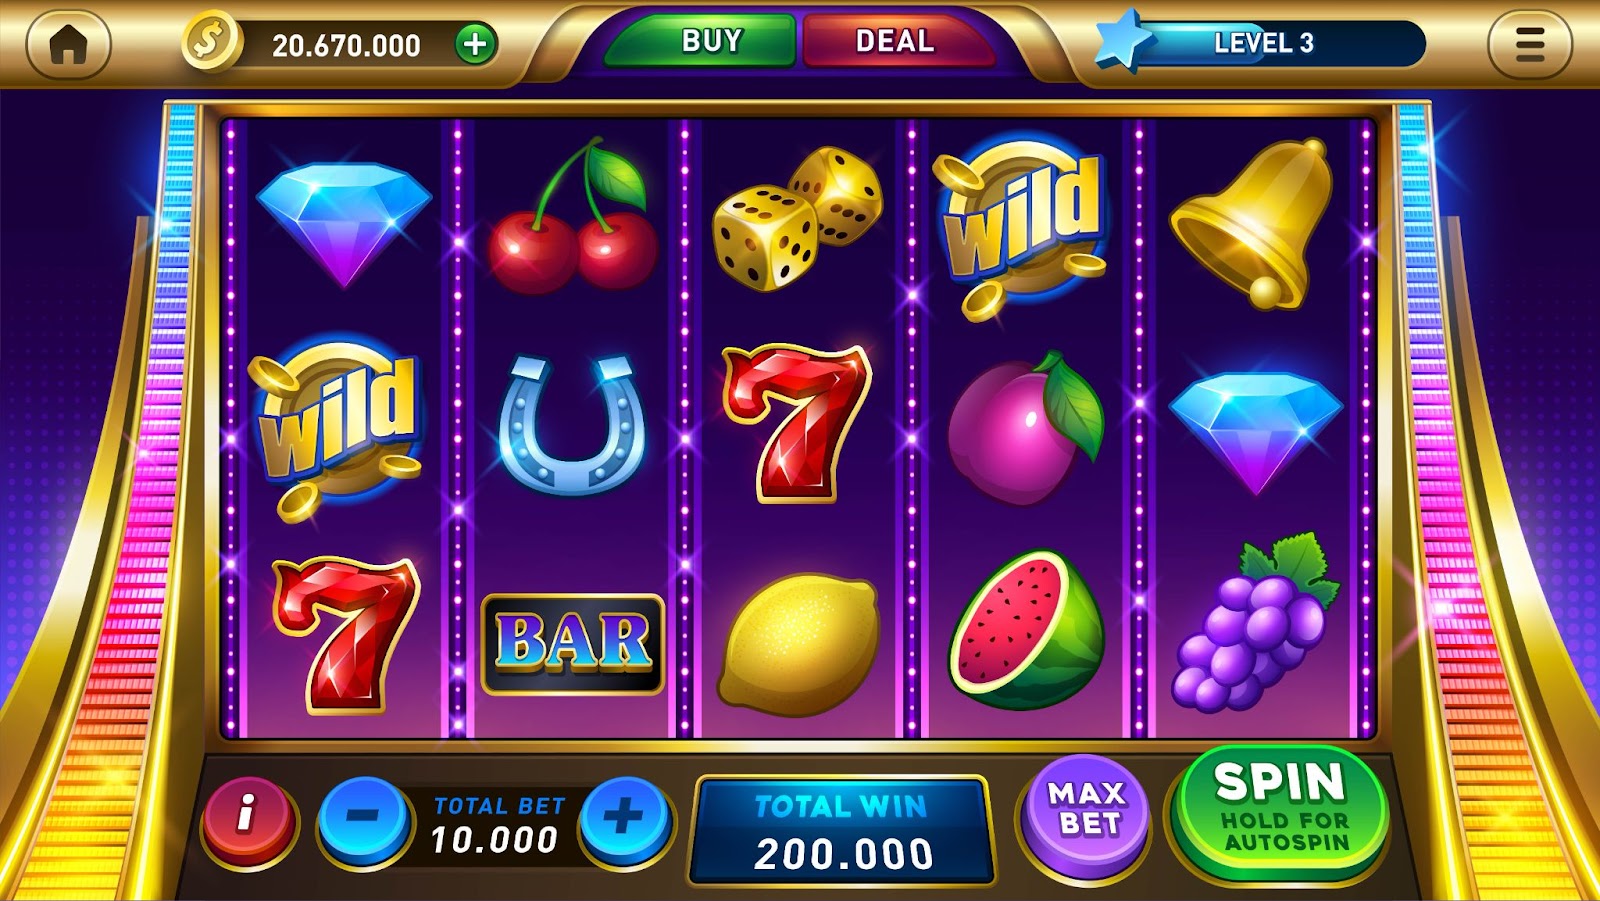 Une capture d'écran dynamique d'un jeu de machine à sous virtuelle affichant divers symboles comme des fruits, des cloches et des jokers avec des boutons pour les options de jeu.